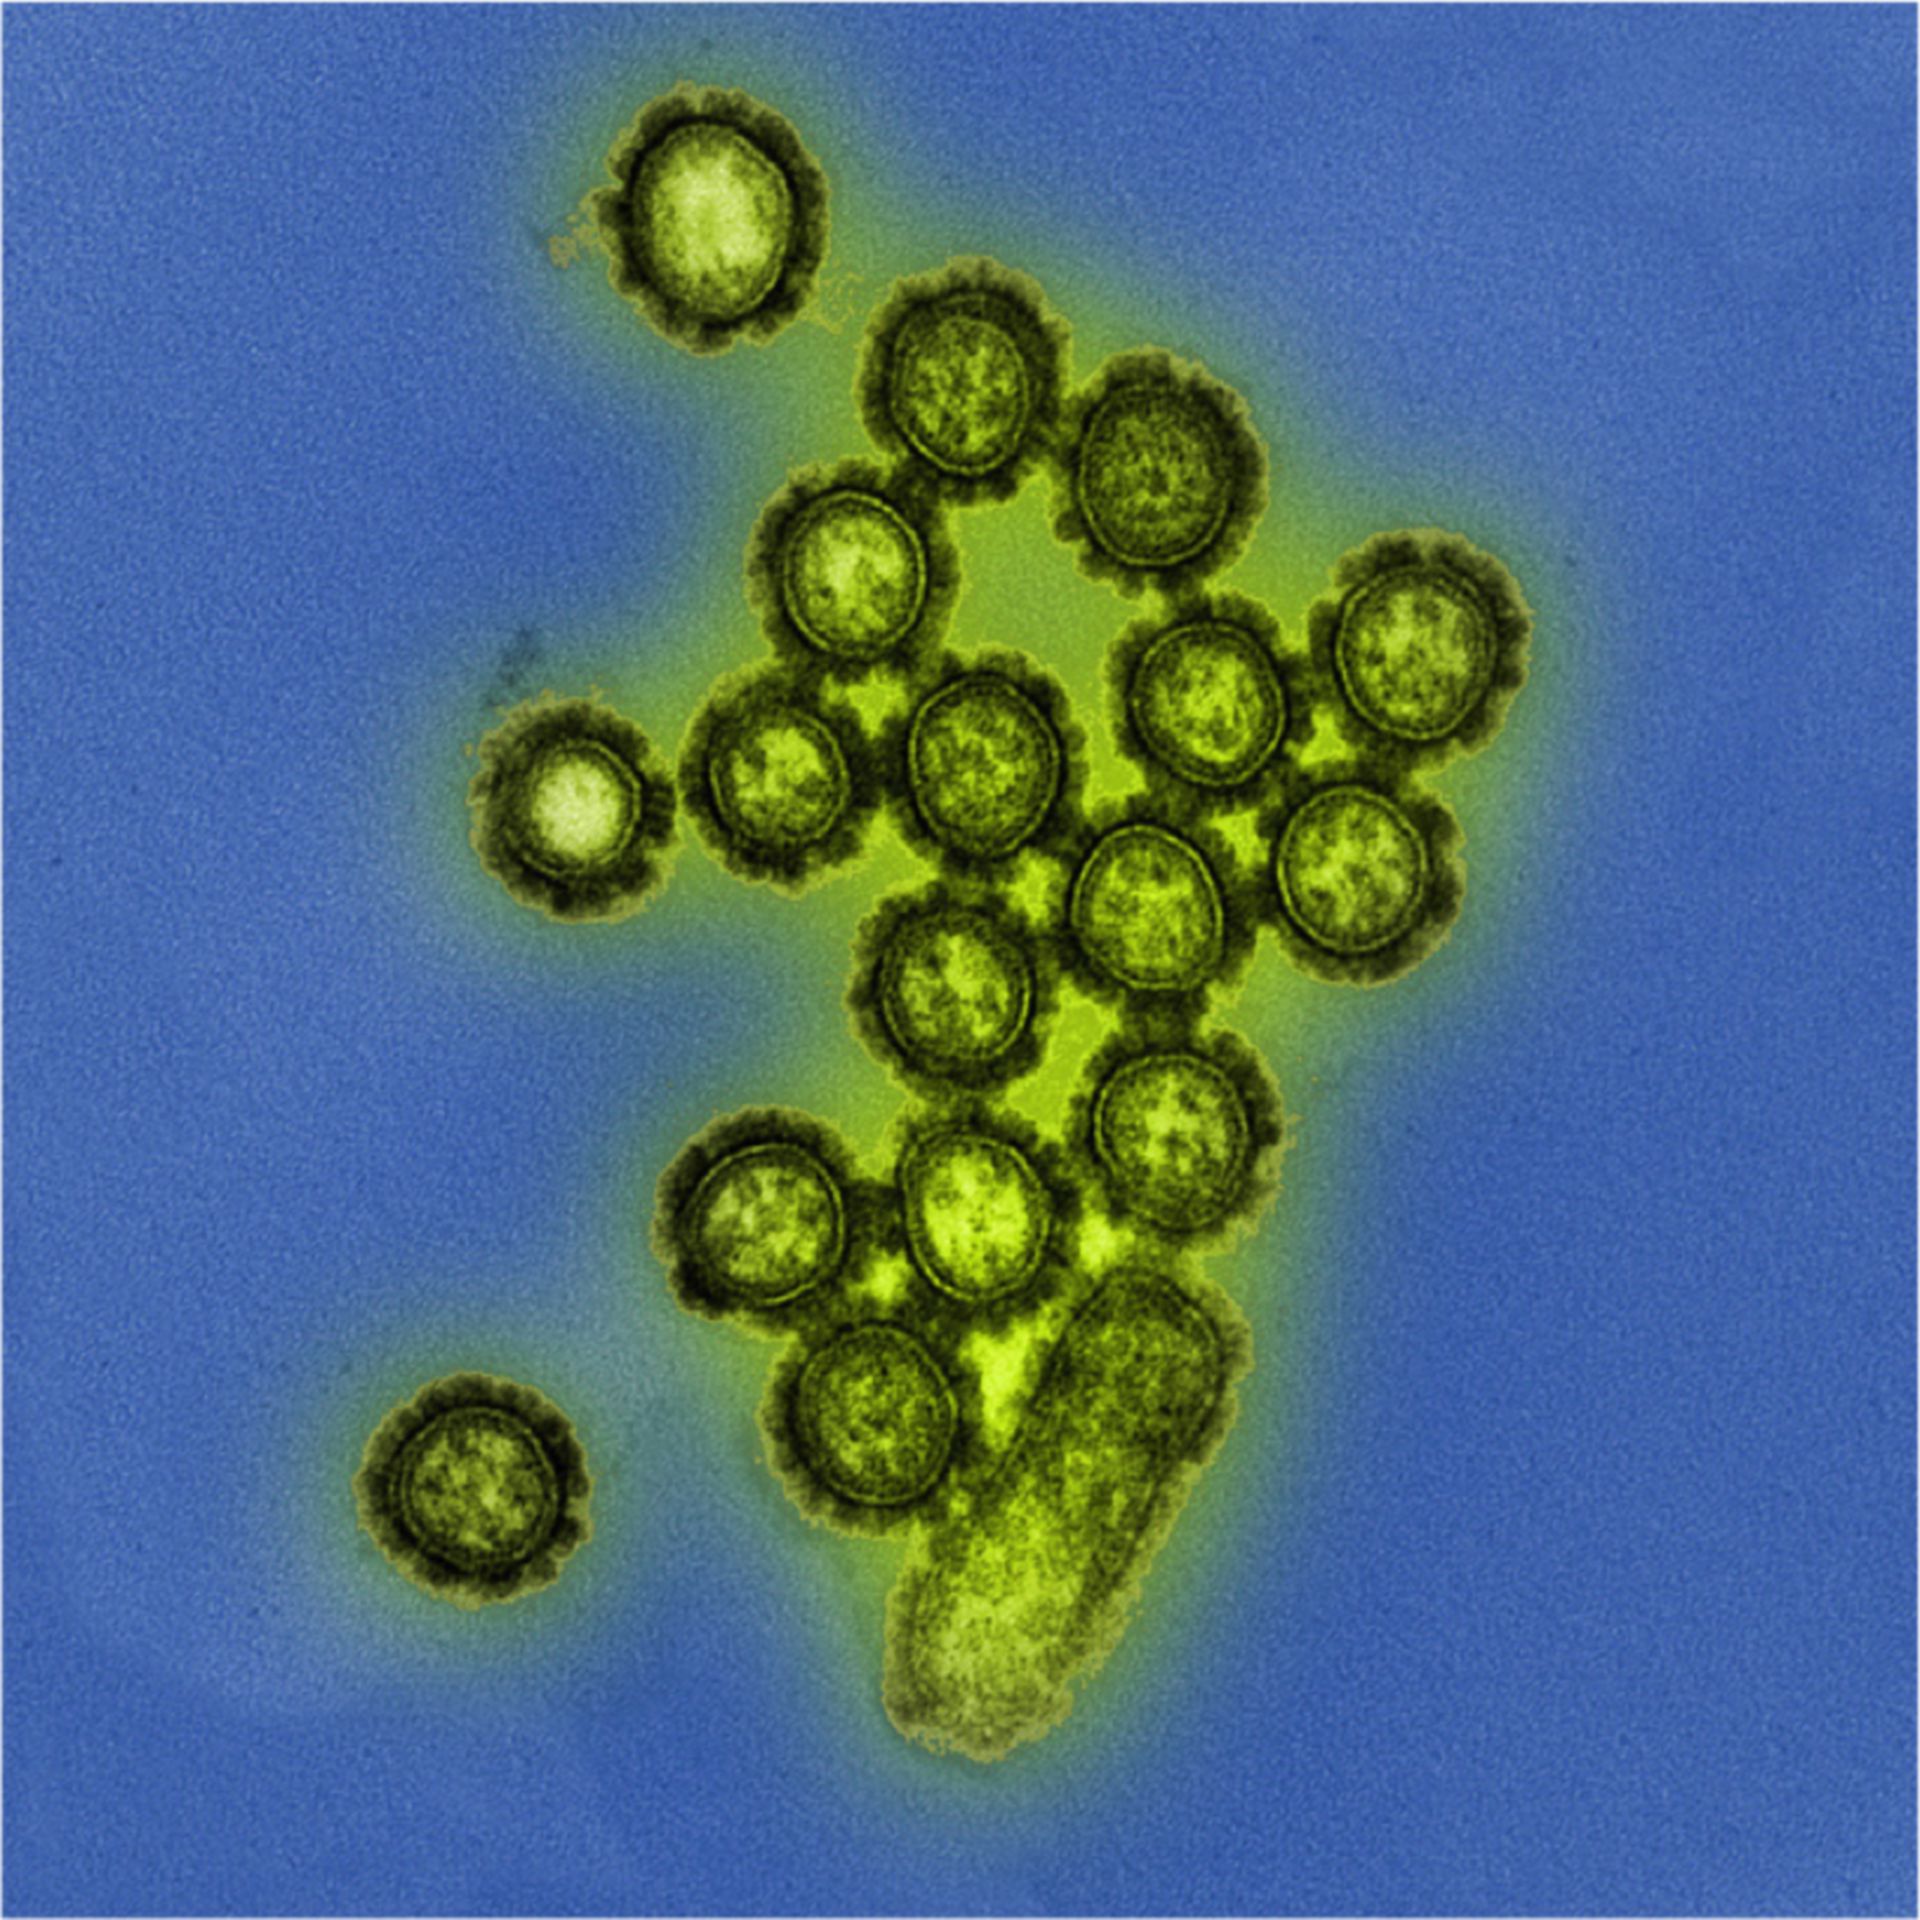 H1N1 Influenza Virenpartikel